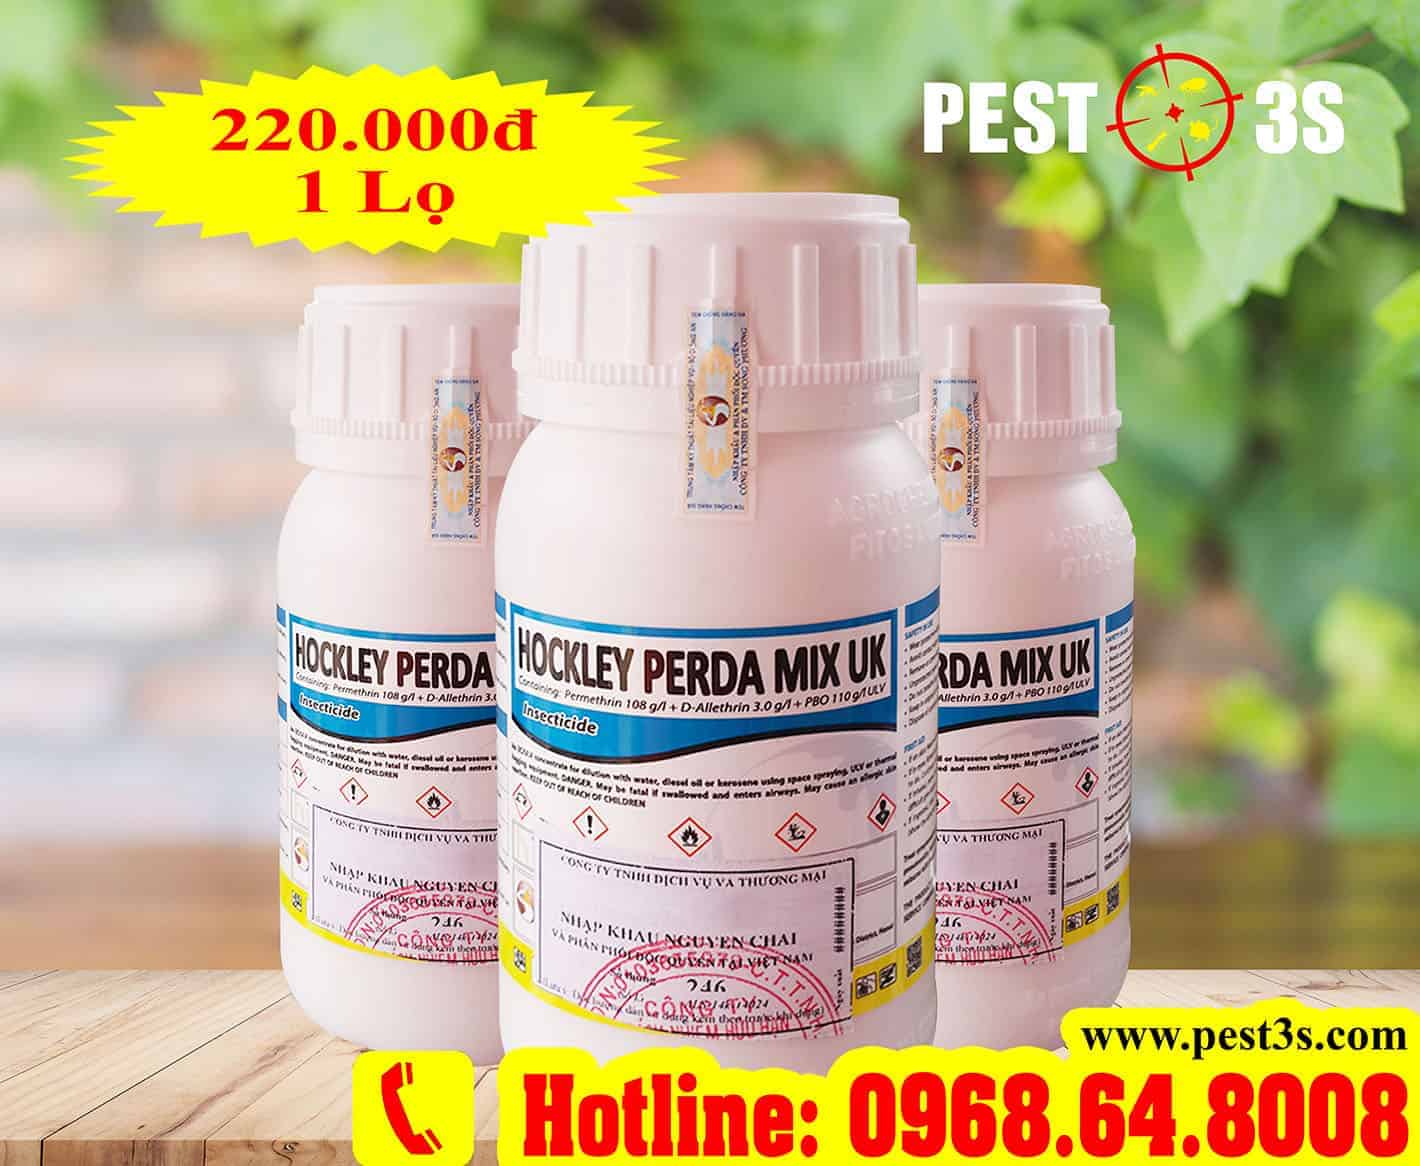 Hockley Perda Mix UK (250ml) - Hóa chất diệt muỗi nhập khẩu Anh Quốc